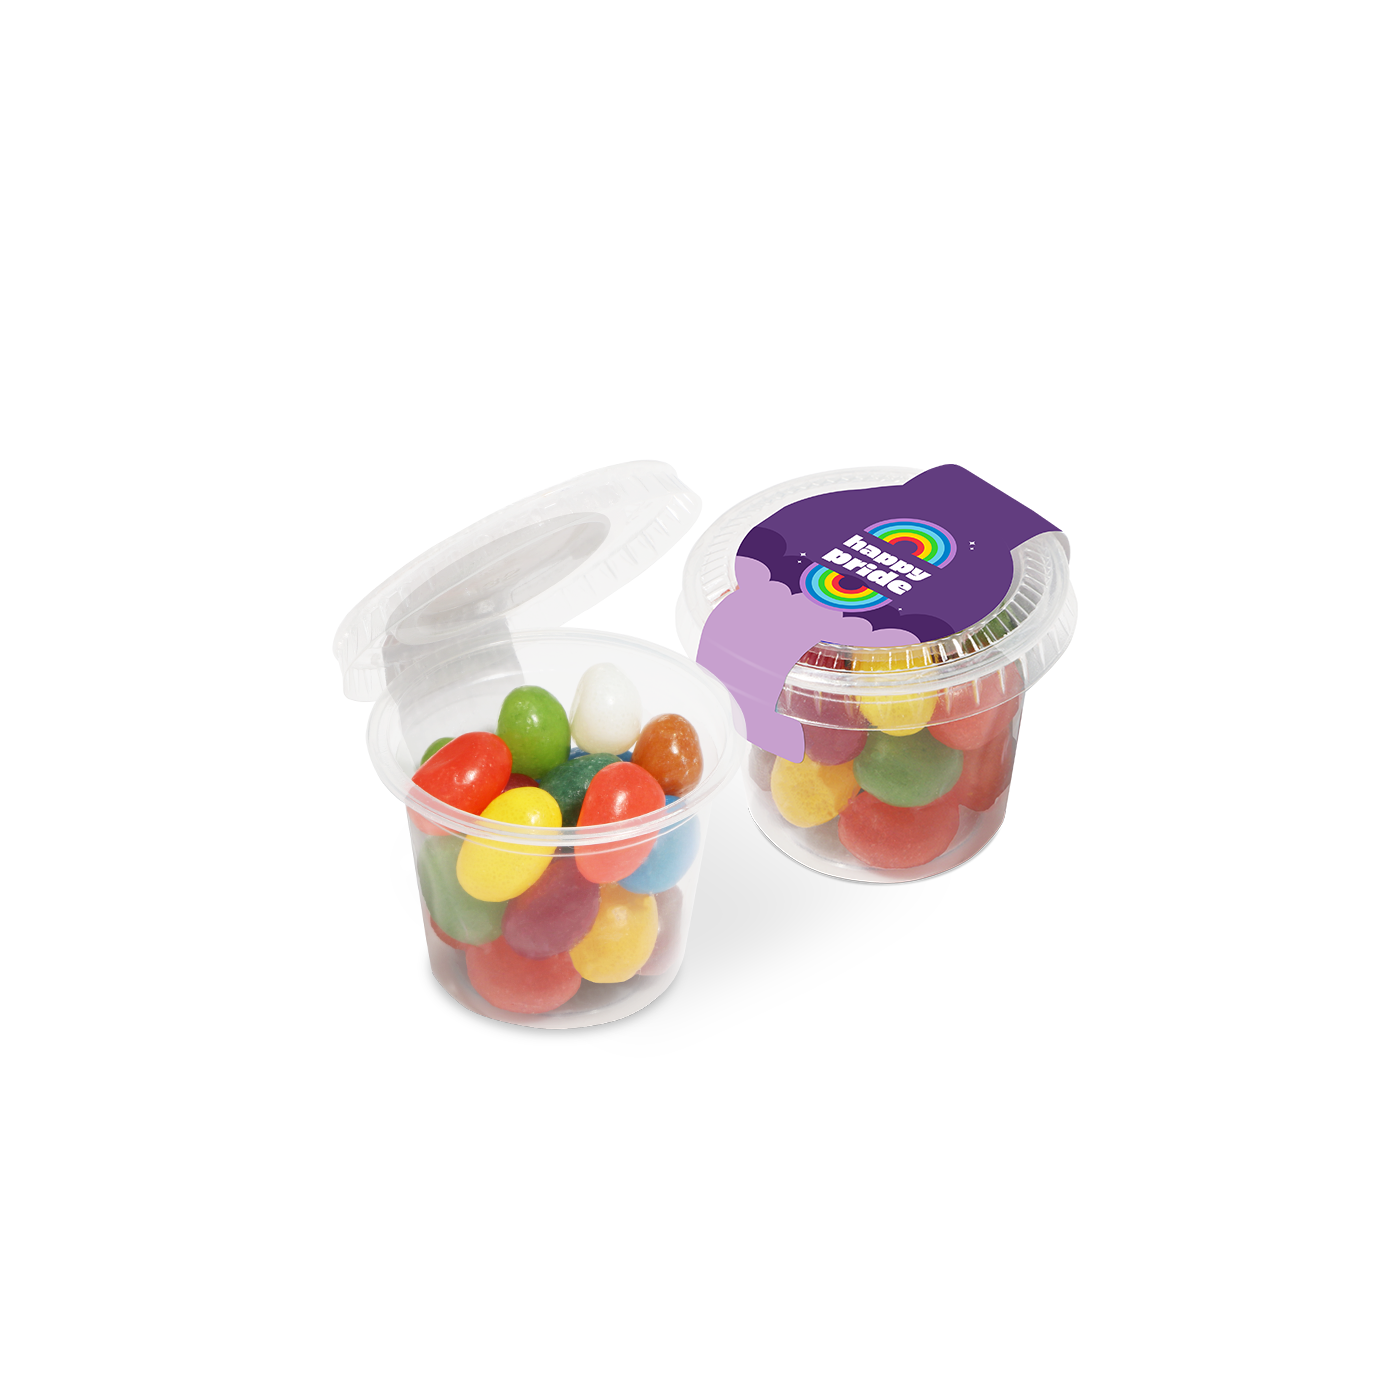 Pride - Eco Mini Pot - Jelly Bean Factory®